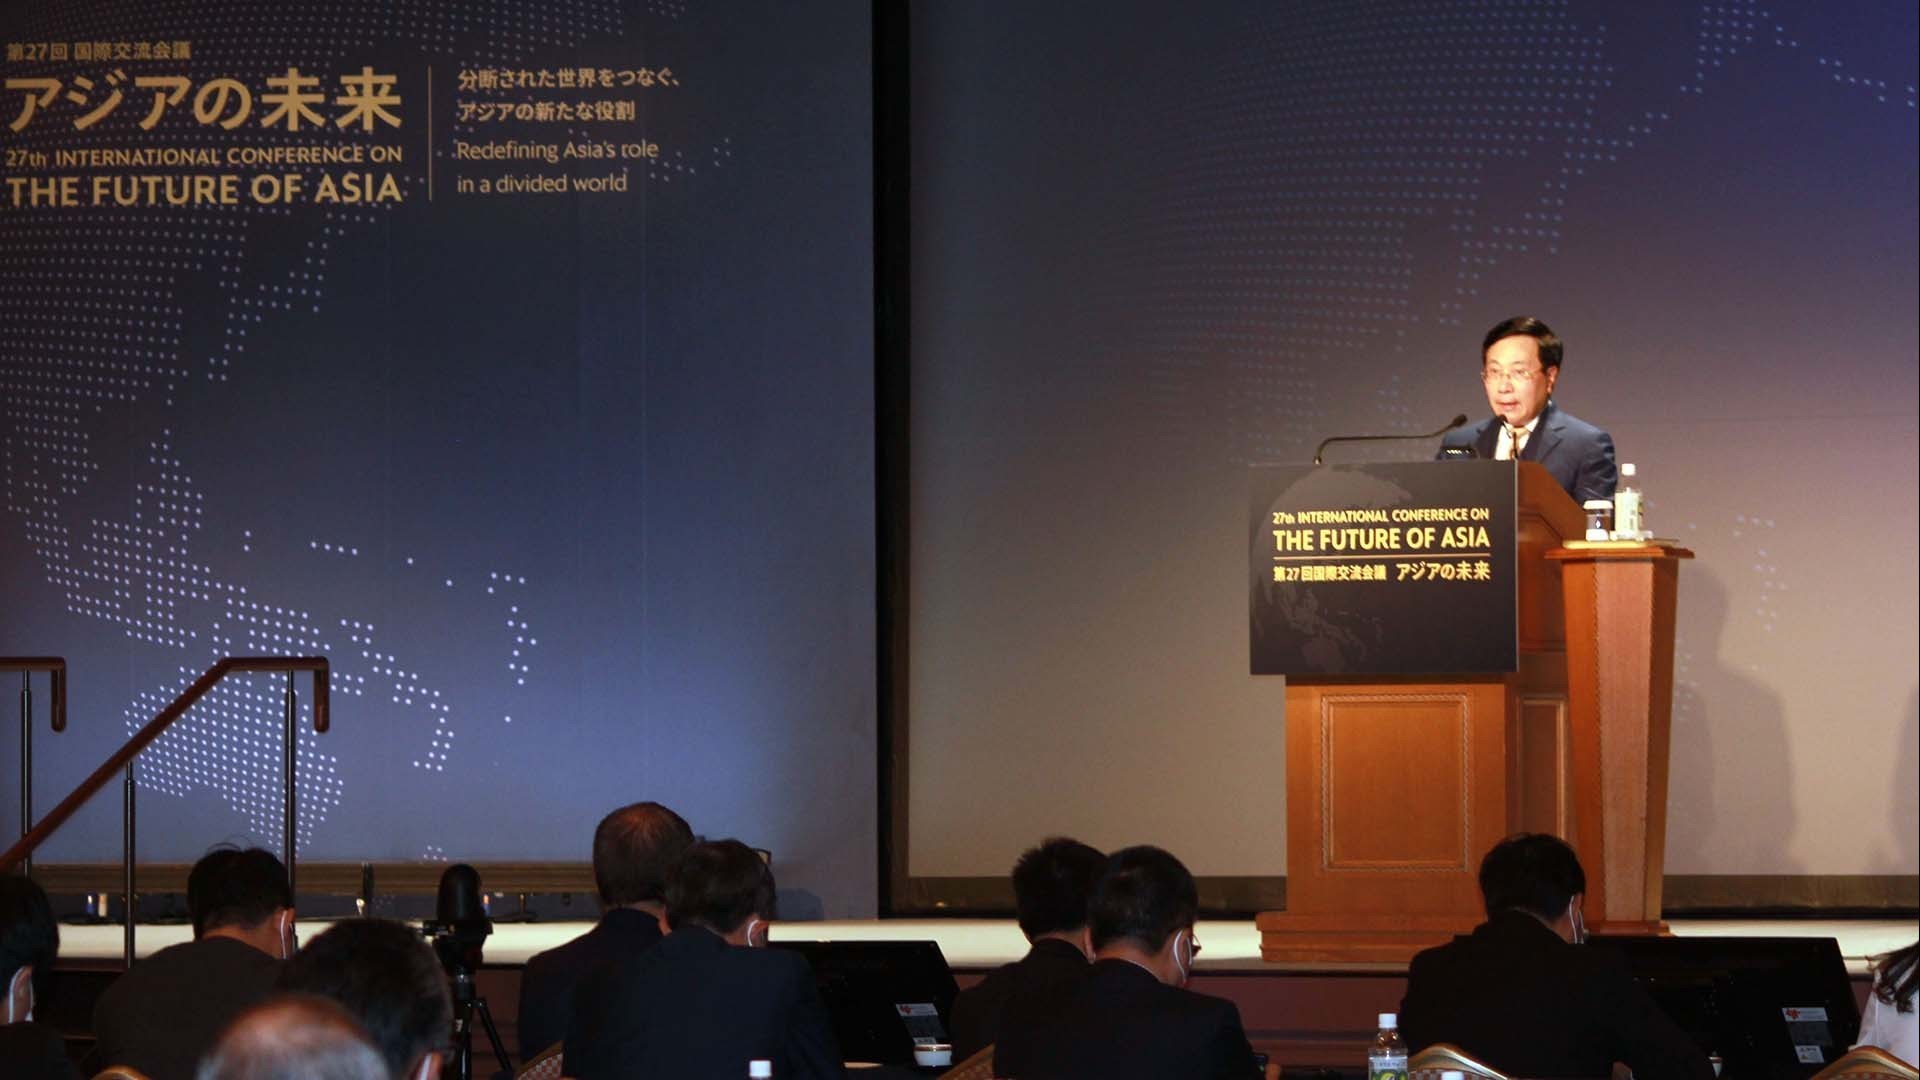 Phát biểu của Phó Thủ tướng Thường trực Phạm Bình Minh tại Hội nghị tương lai châu Á lần thứ 27